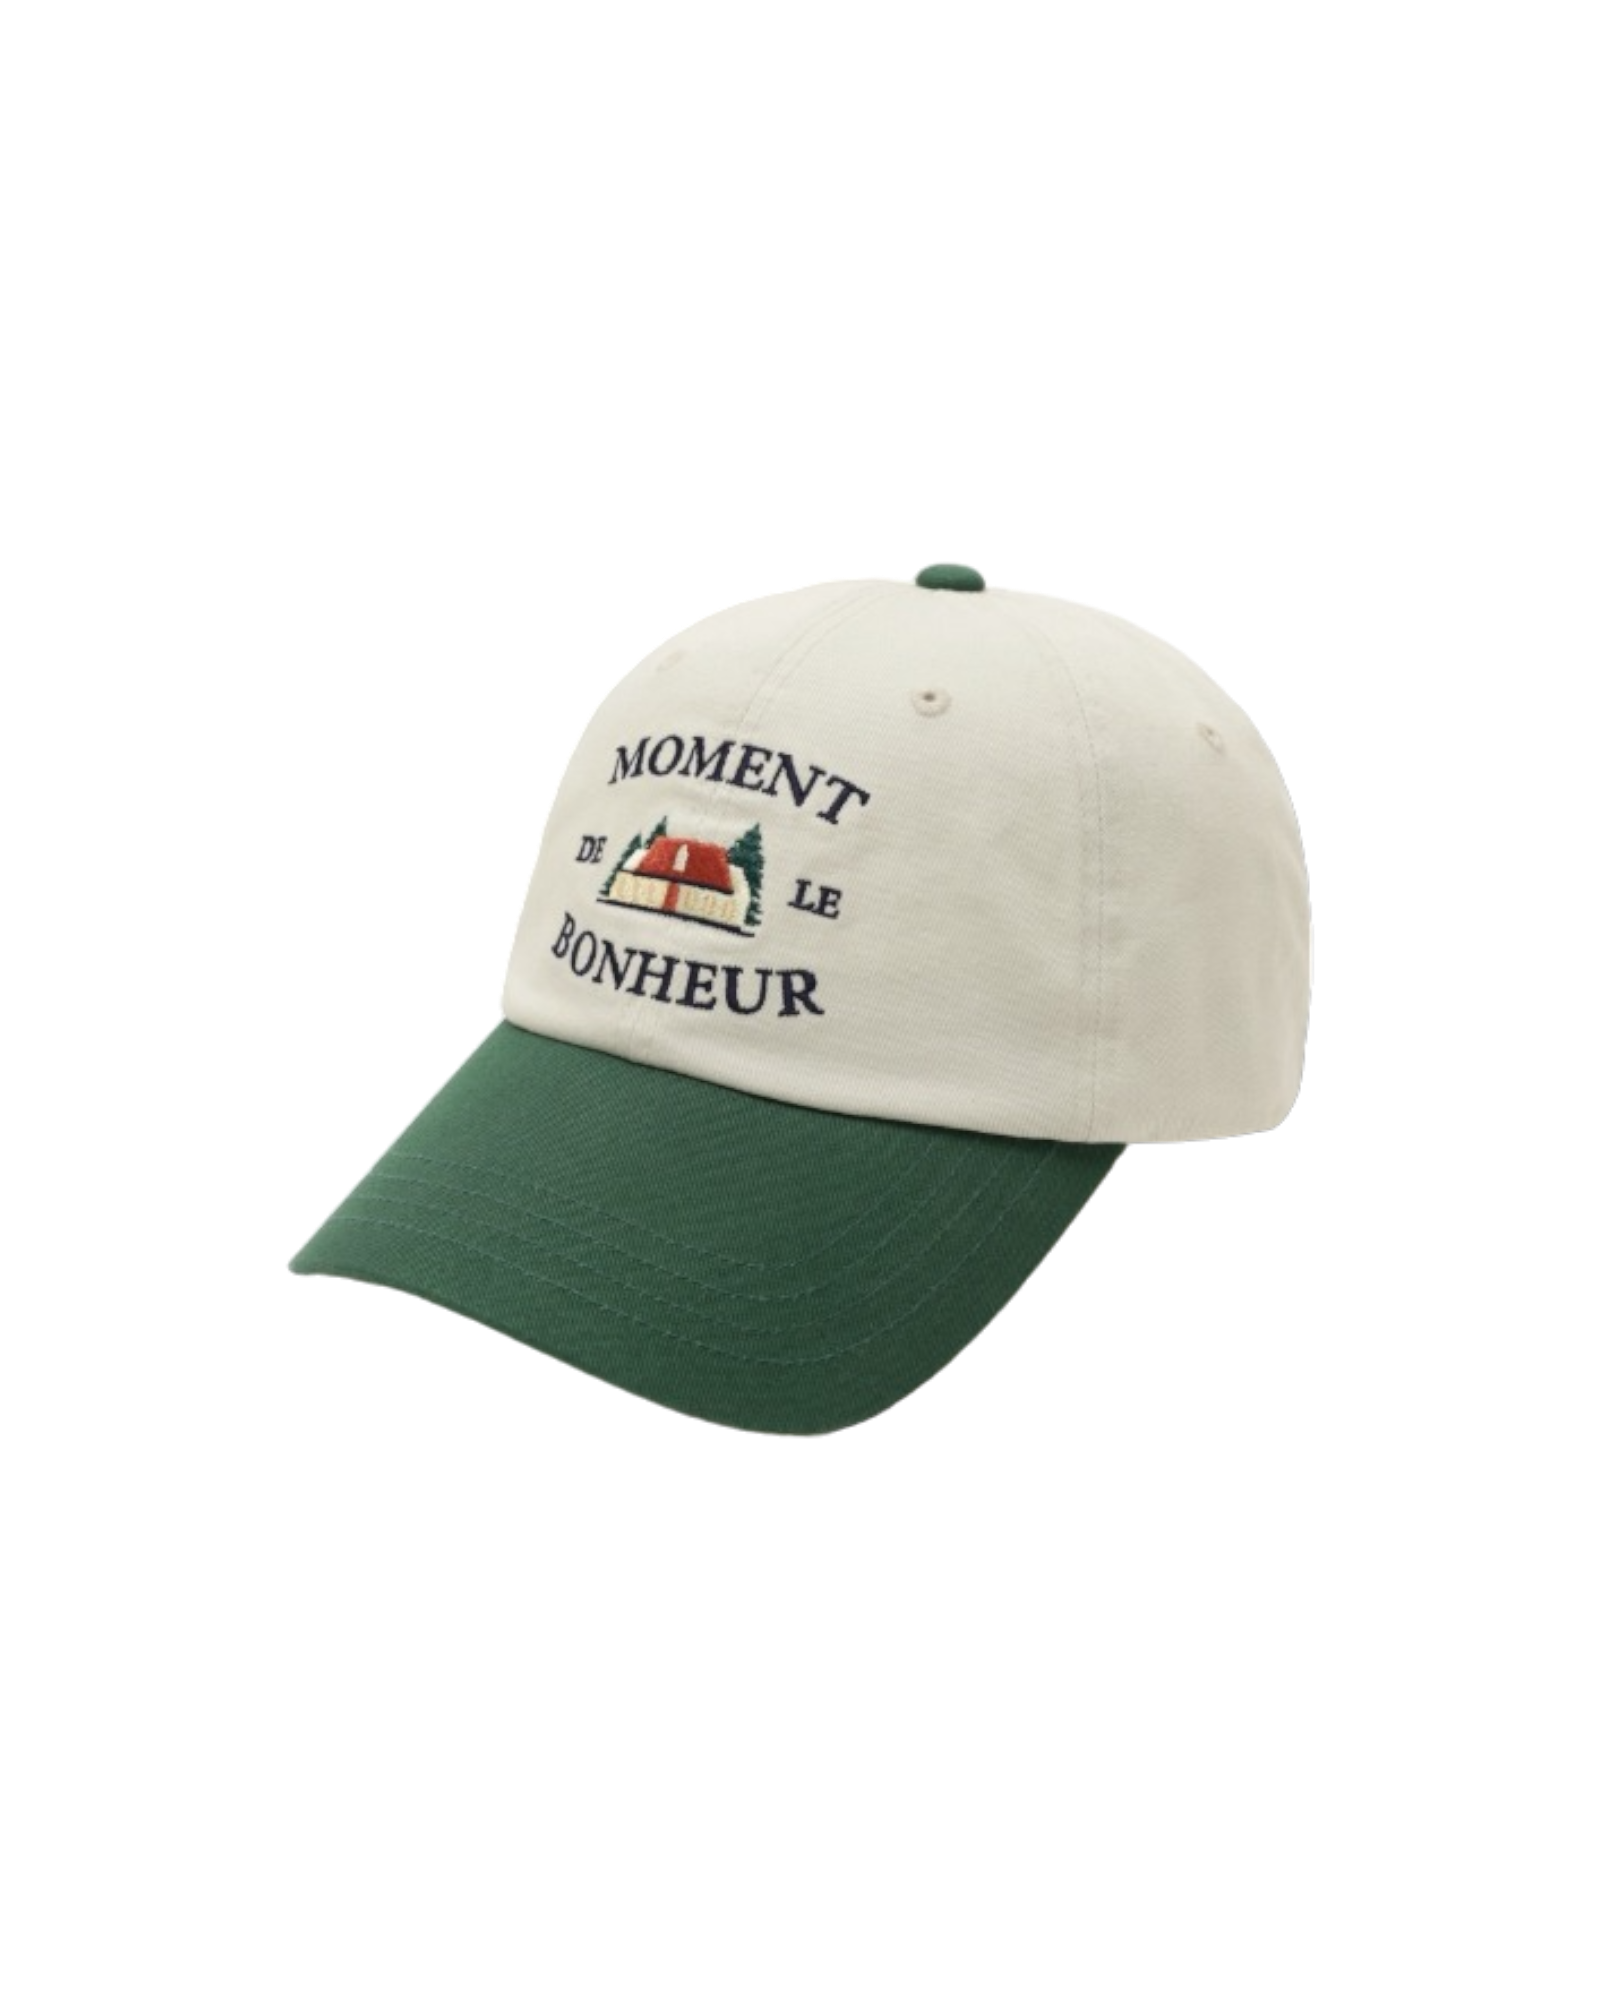 Bonheur 淺米色/綠色棒球帽